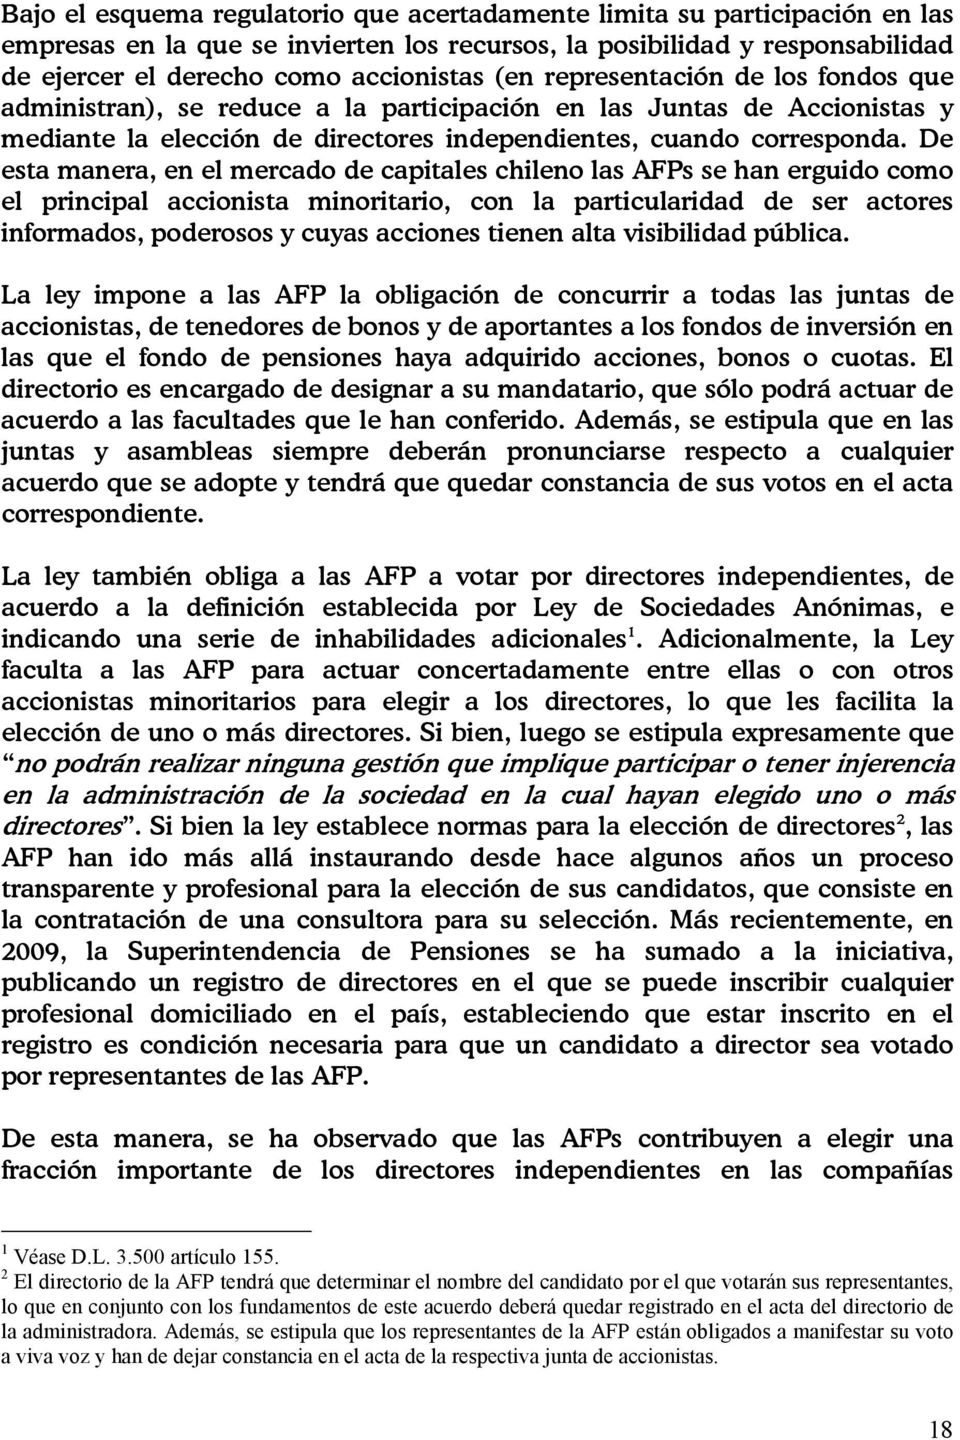 De esta manera, en el mercado de capitales chileno las AFPs se han erguido como el principal accionista minoritario, con la particularidad de ser actores informados, poderosos y cuyas acciones tienen